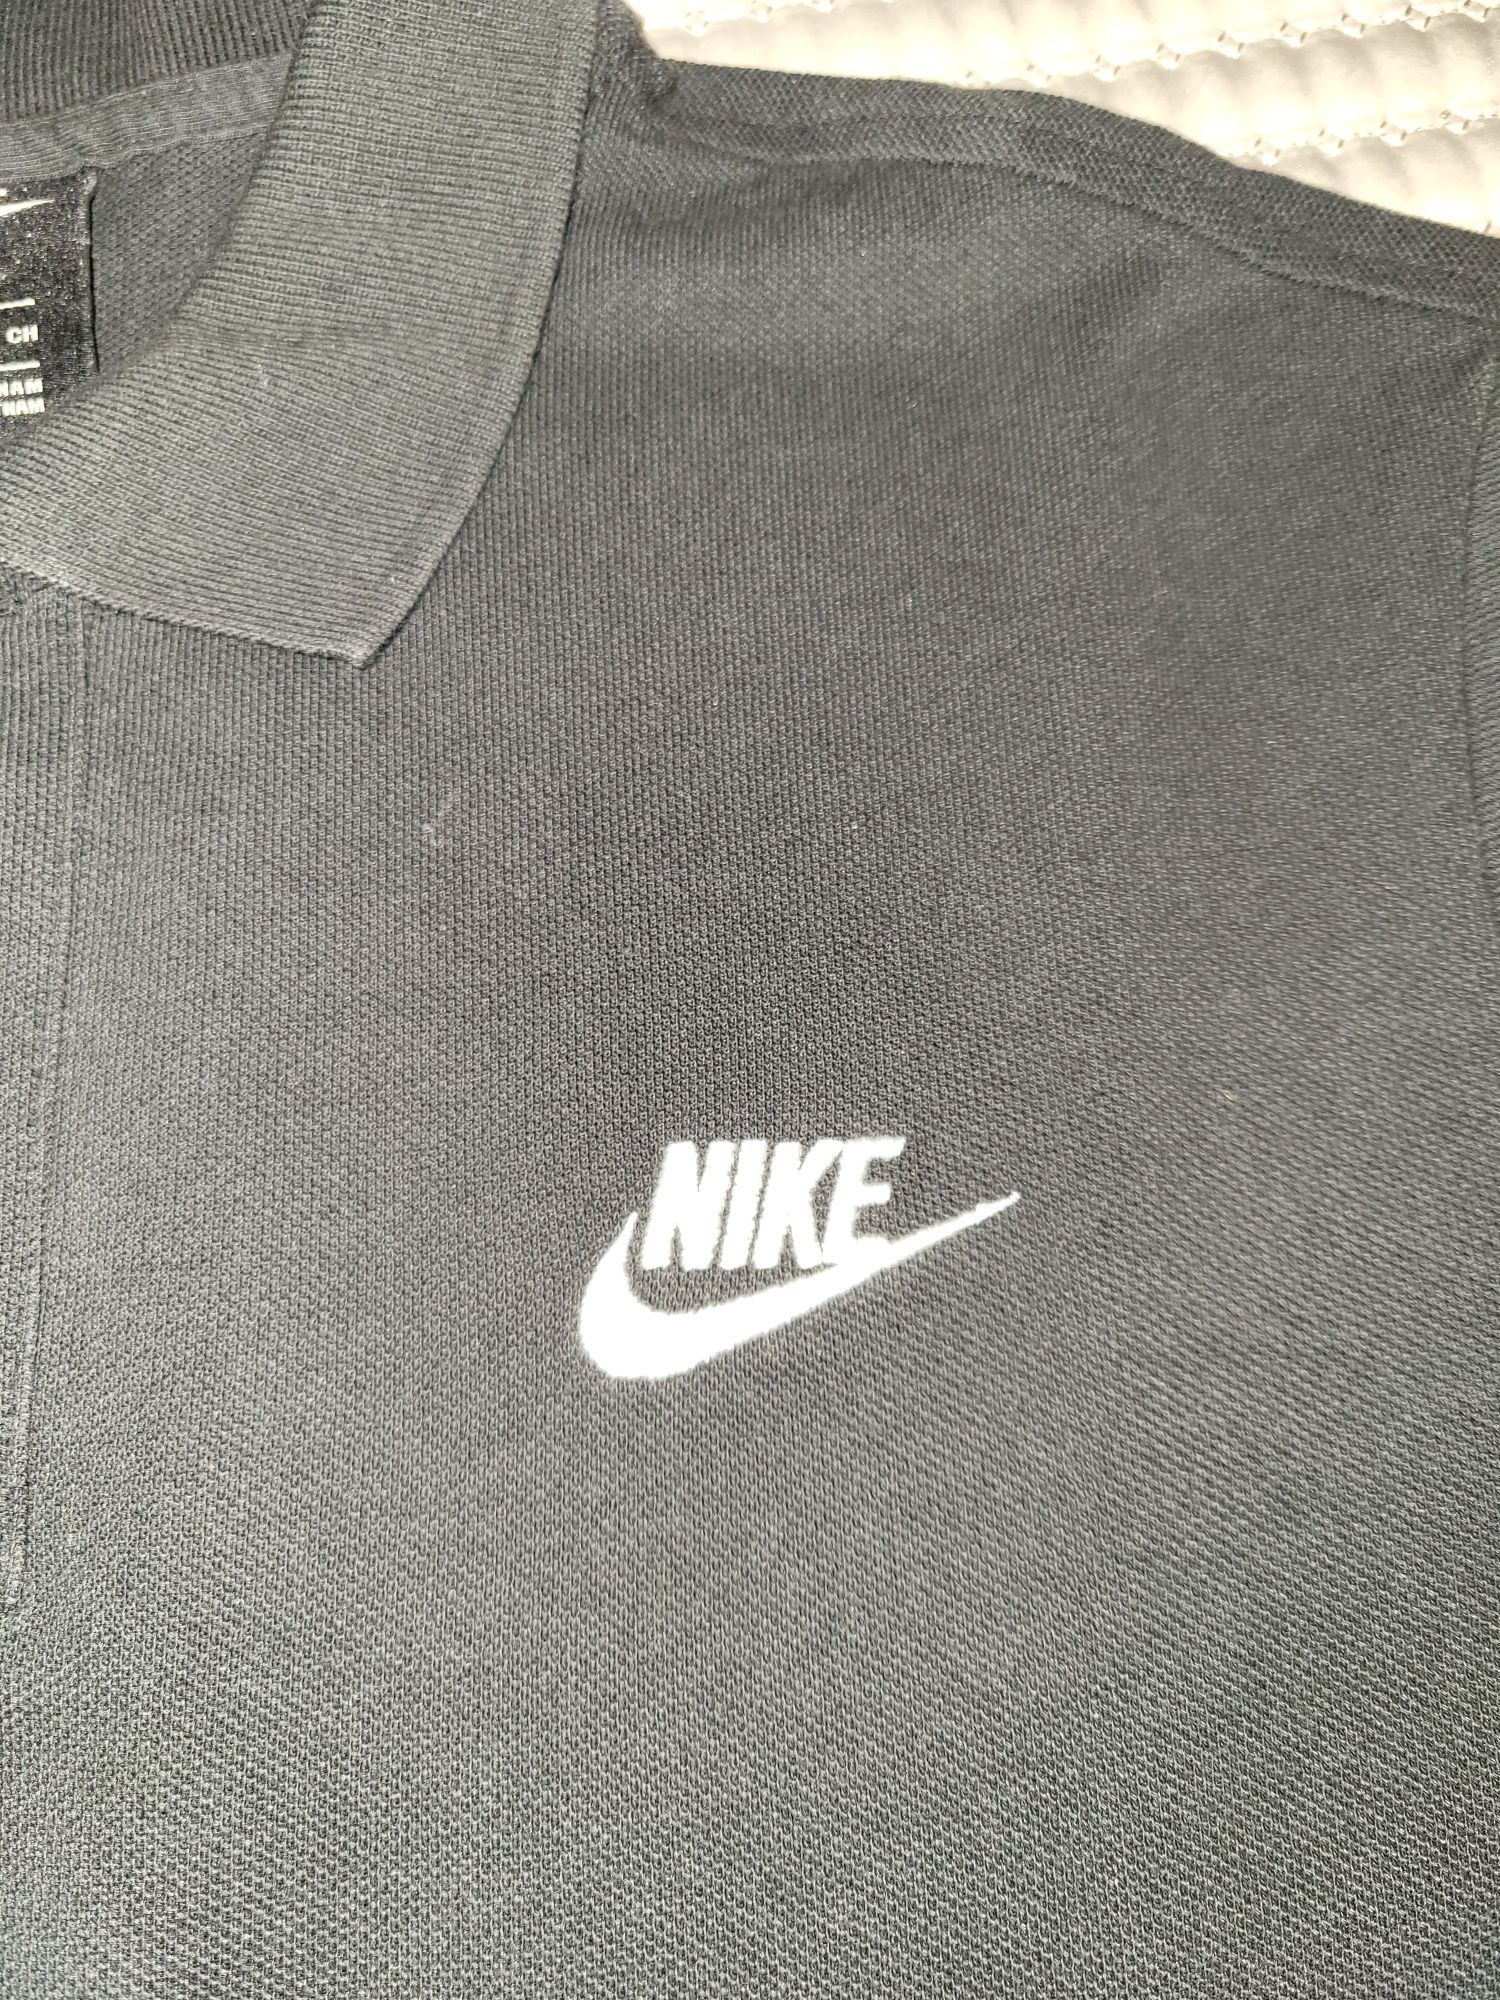 Polos Nike  (como novos)